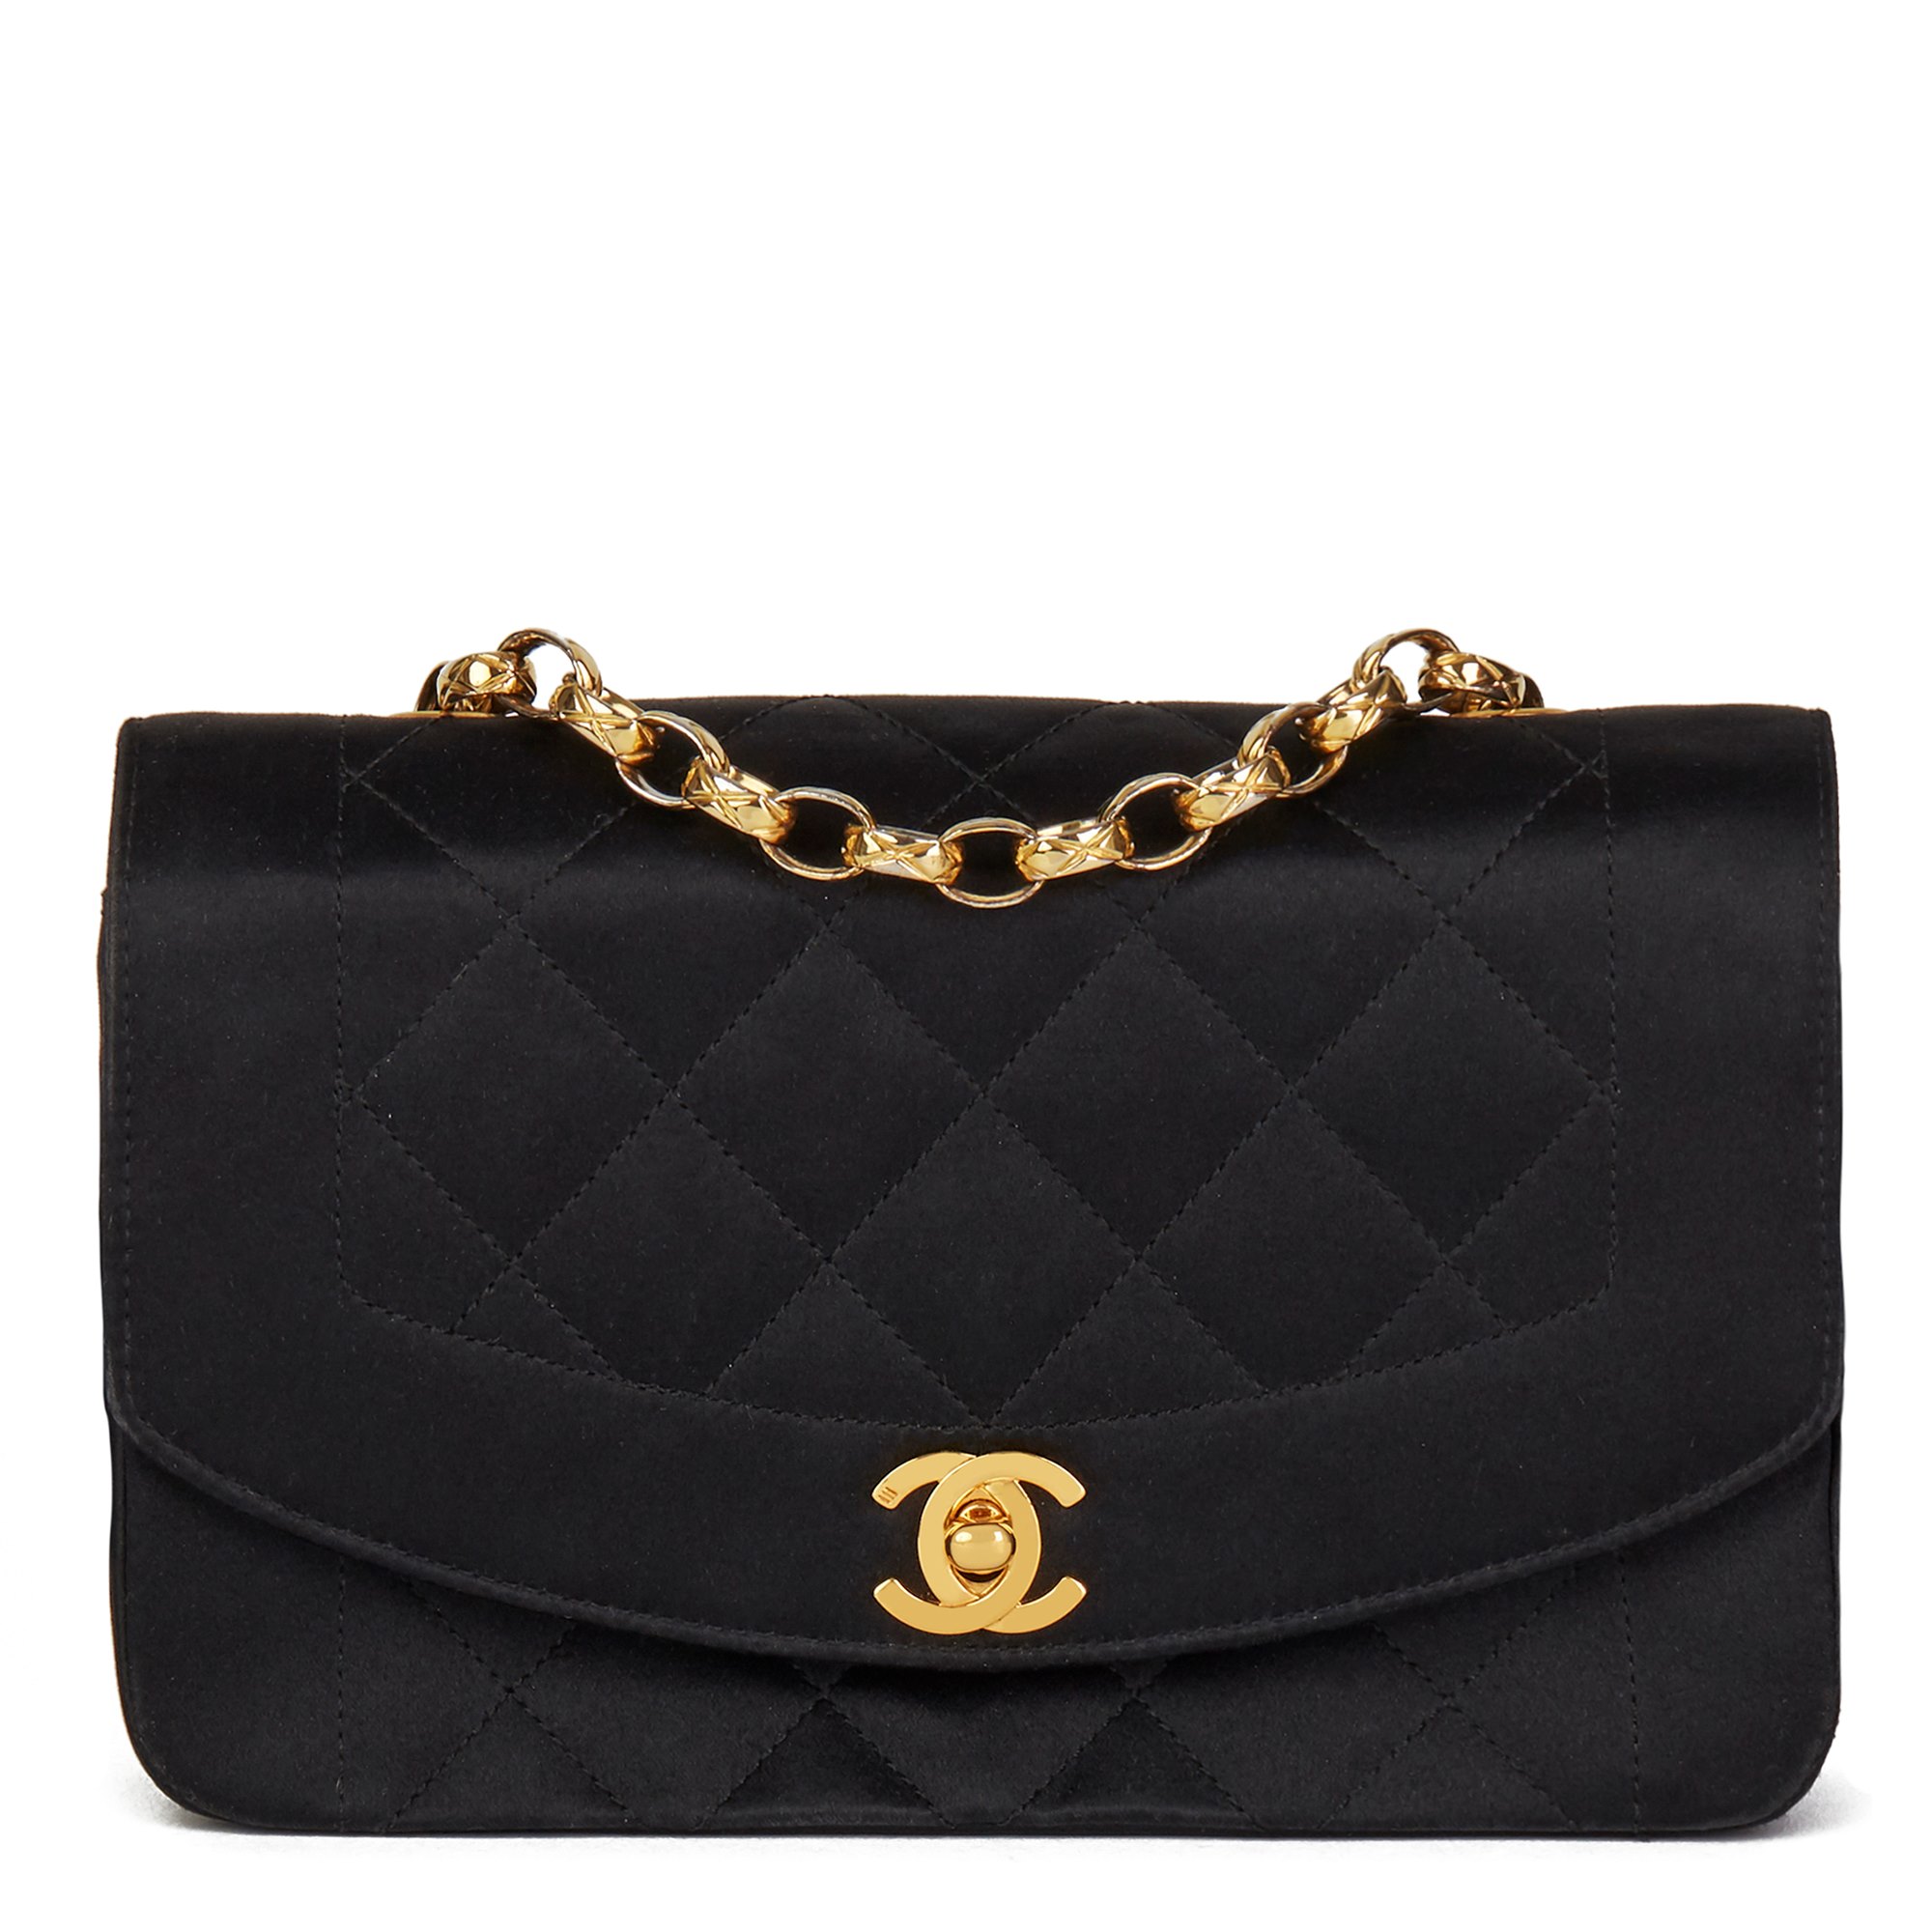 Second Hand Chanel Handbags For Salem | semashow.com